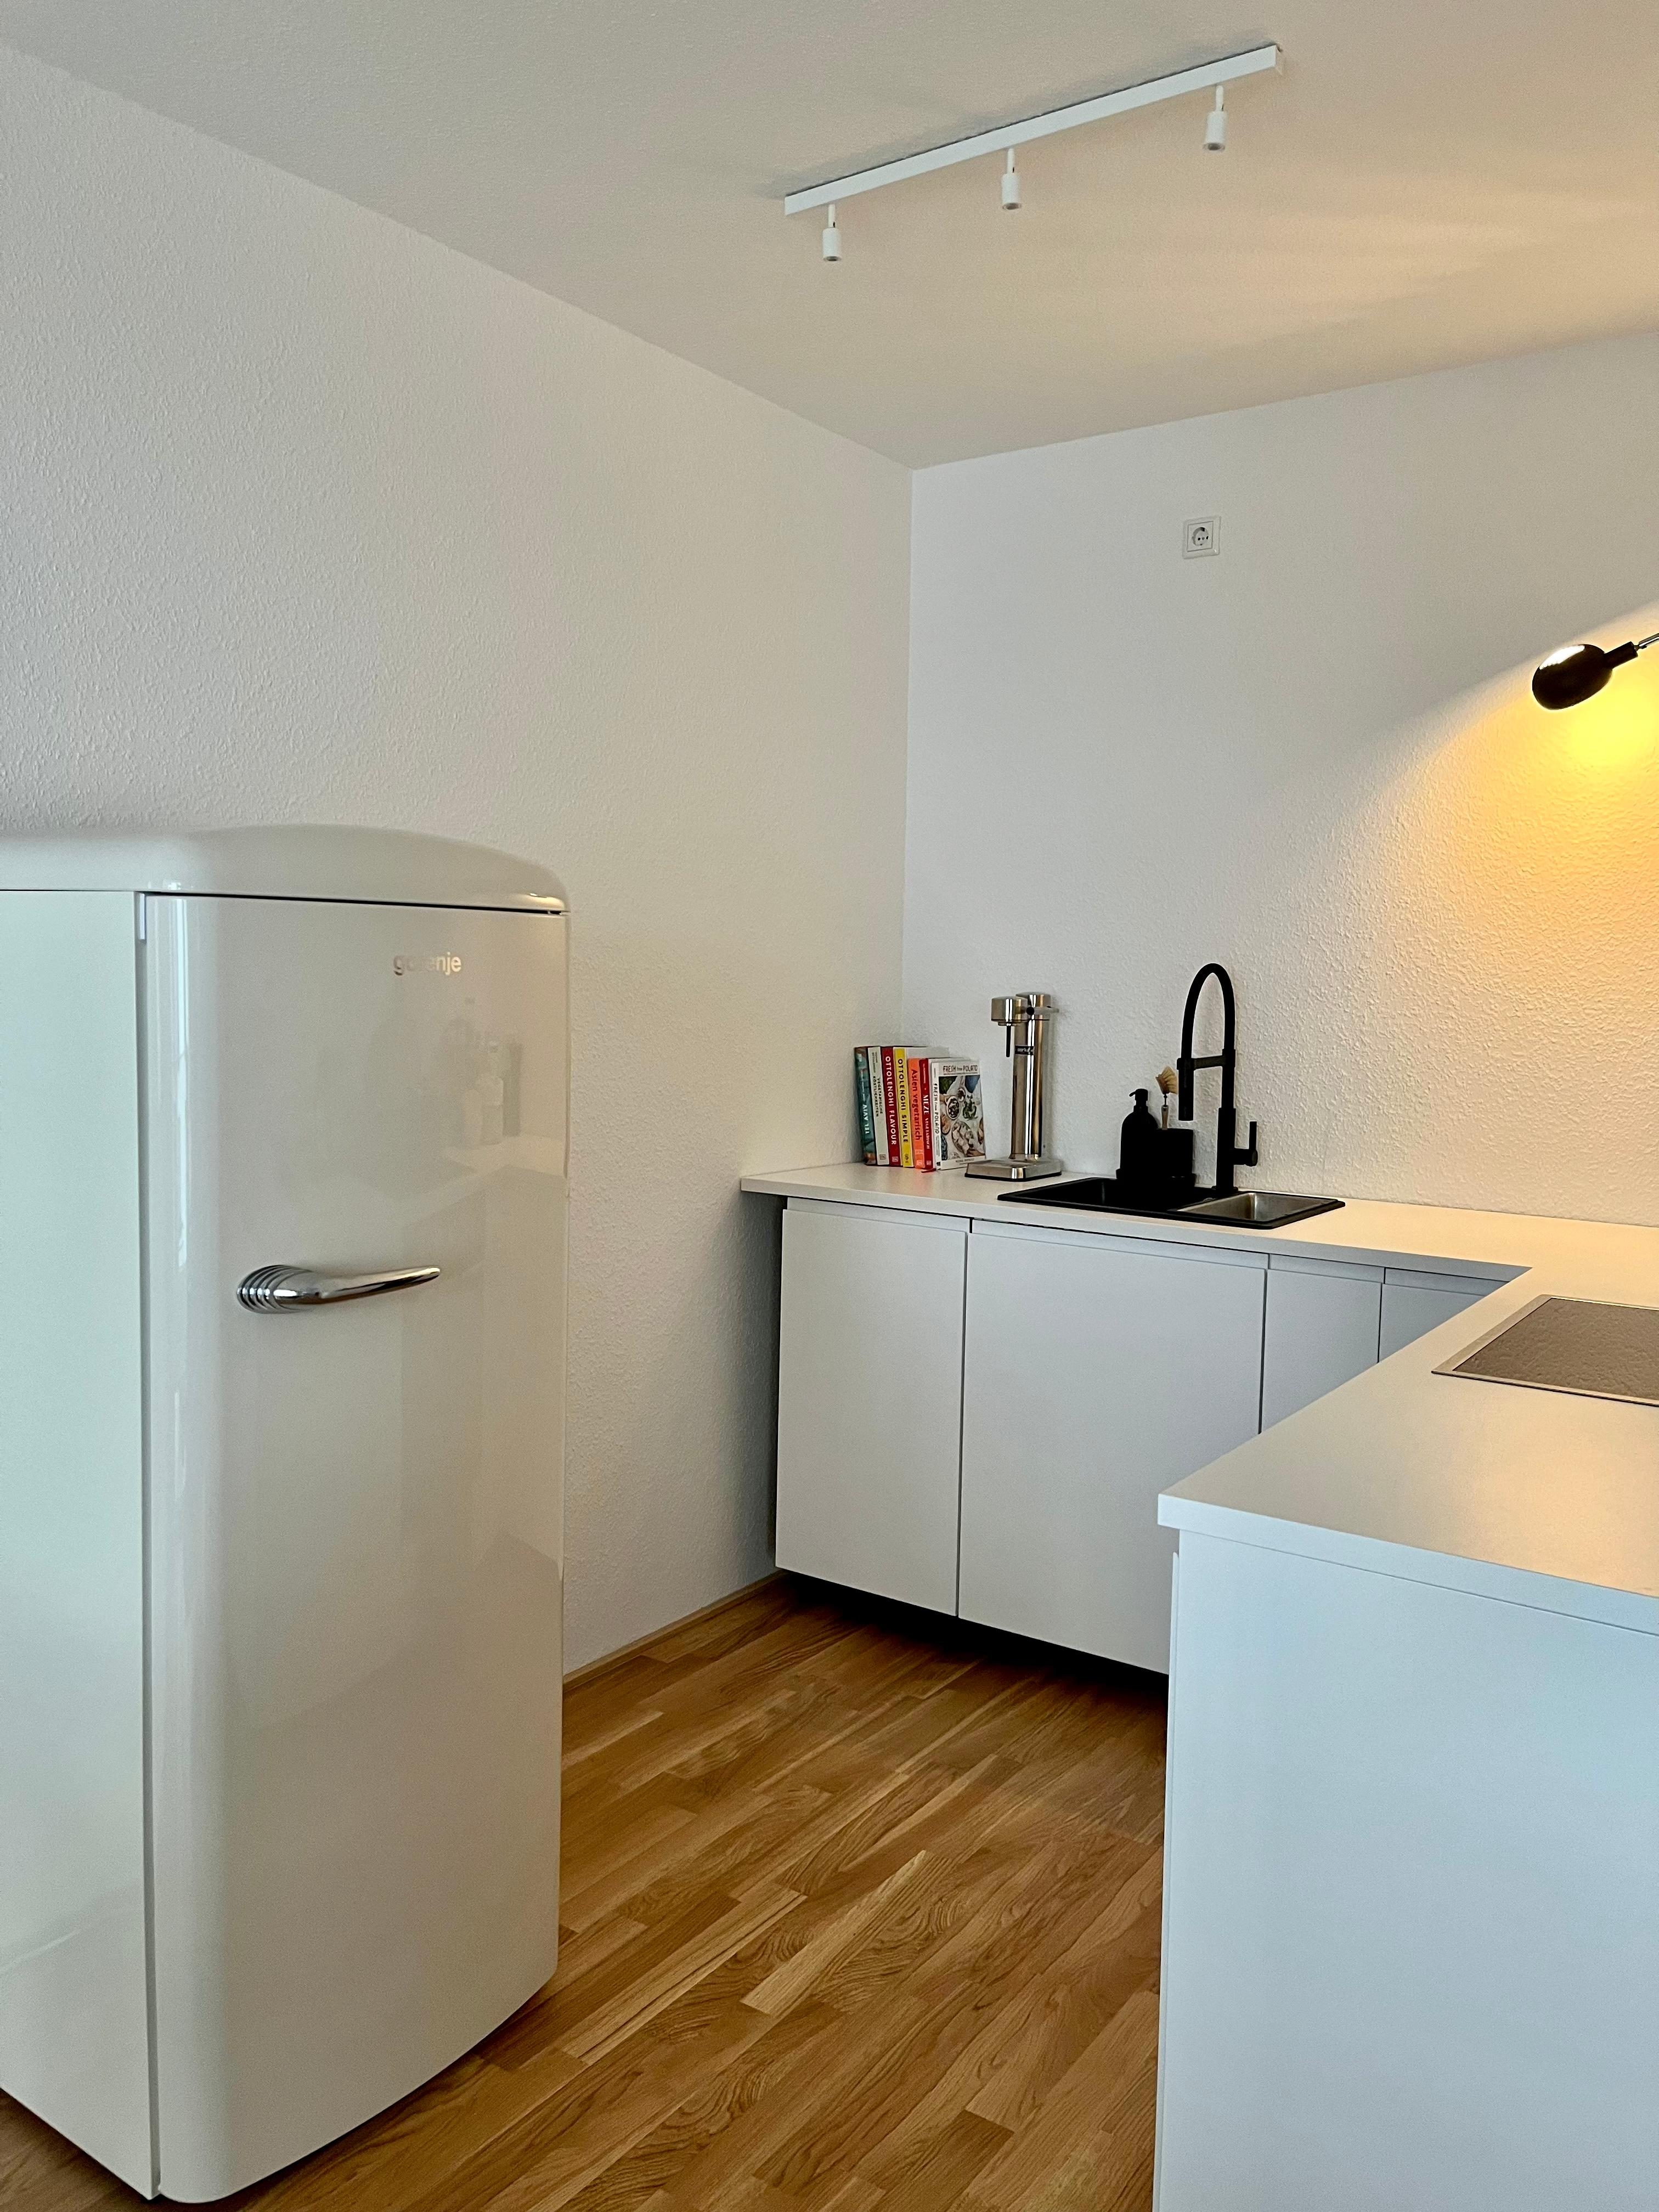 Neue Küche im minimalistischen Look #mykitchen #kitchen #blackandwhite 🖤🤍